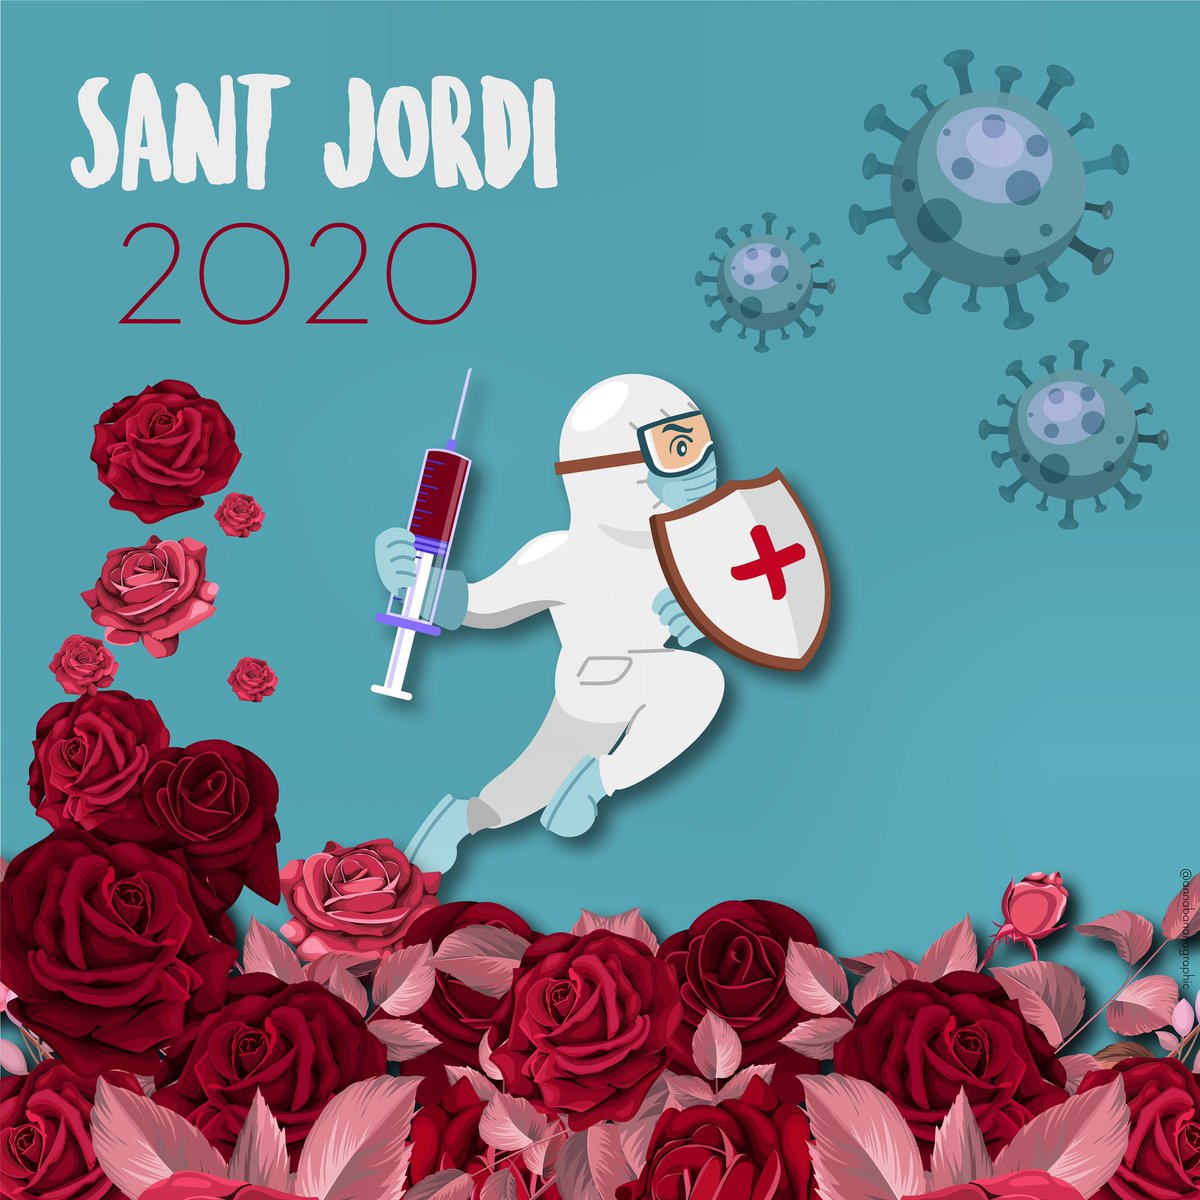 Avui us comparteixo un disseny que he fet per tots els sanitaris ja que ells, són els nostres Sant Jordi! 🌹🐉💉

#SantJordi2020 #COVID19 #stjordi #StayHome